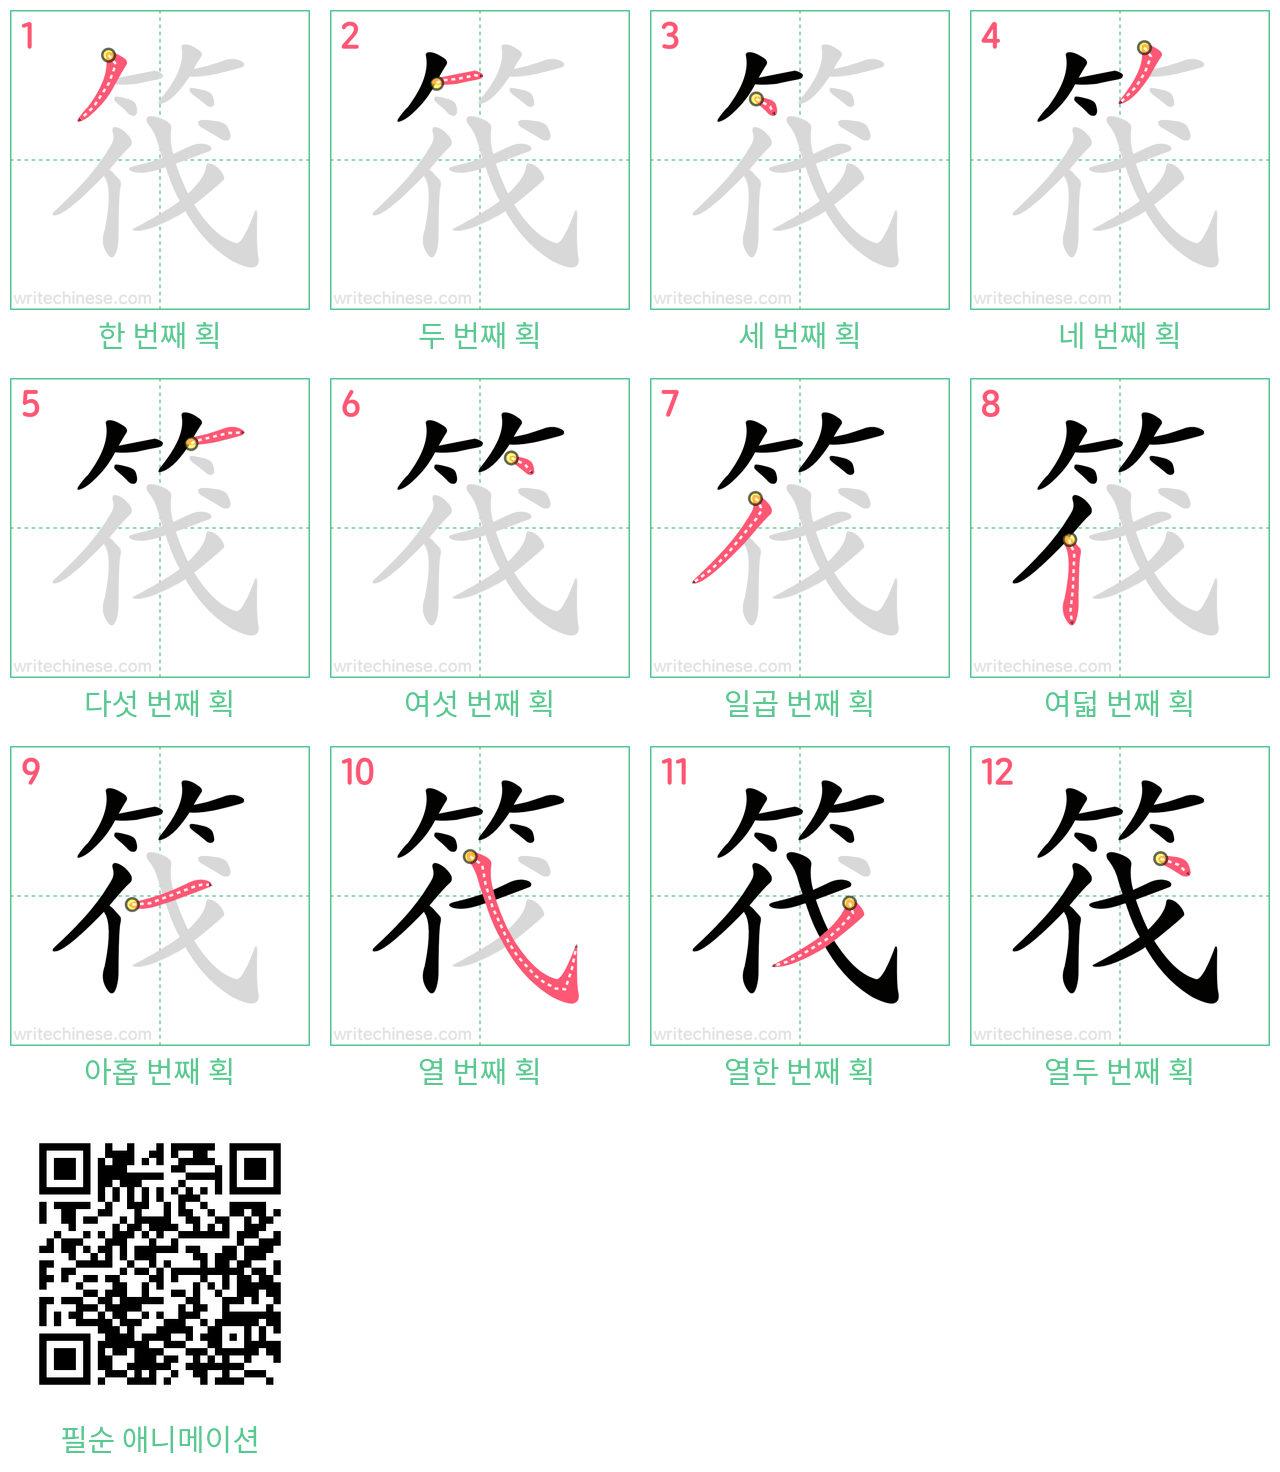 筏 step-by-step stroke order diagrams